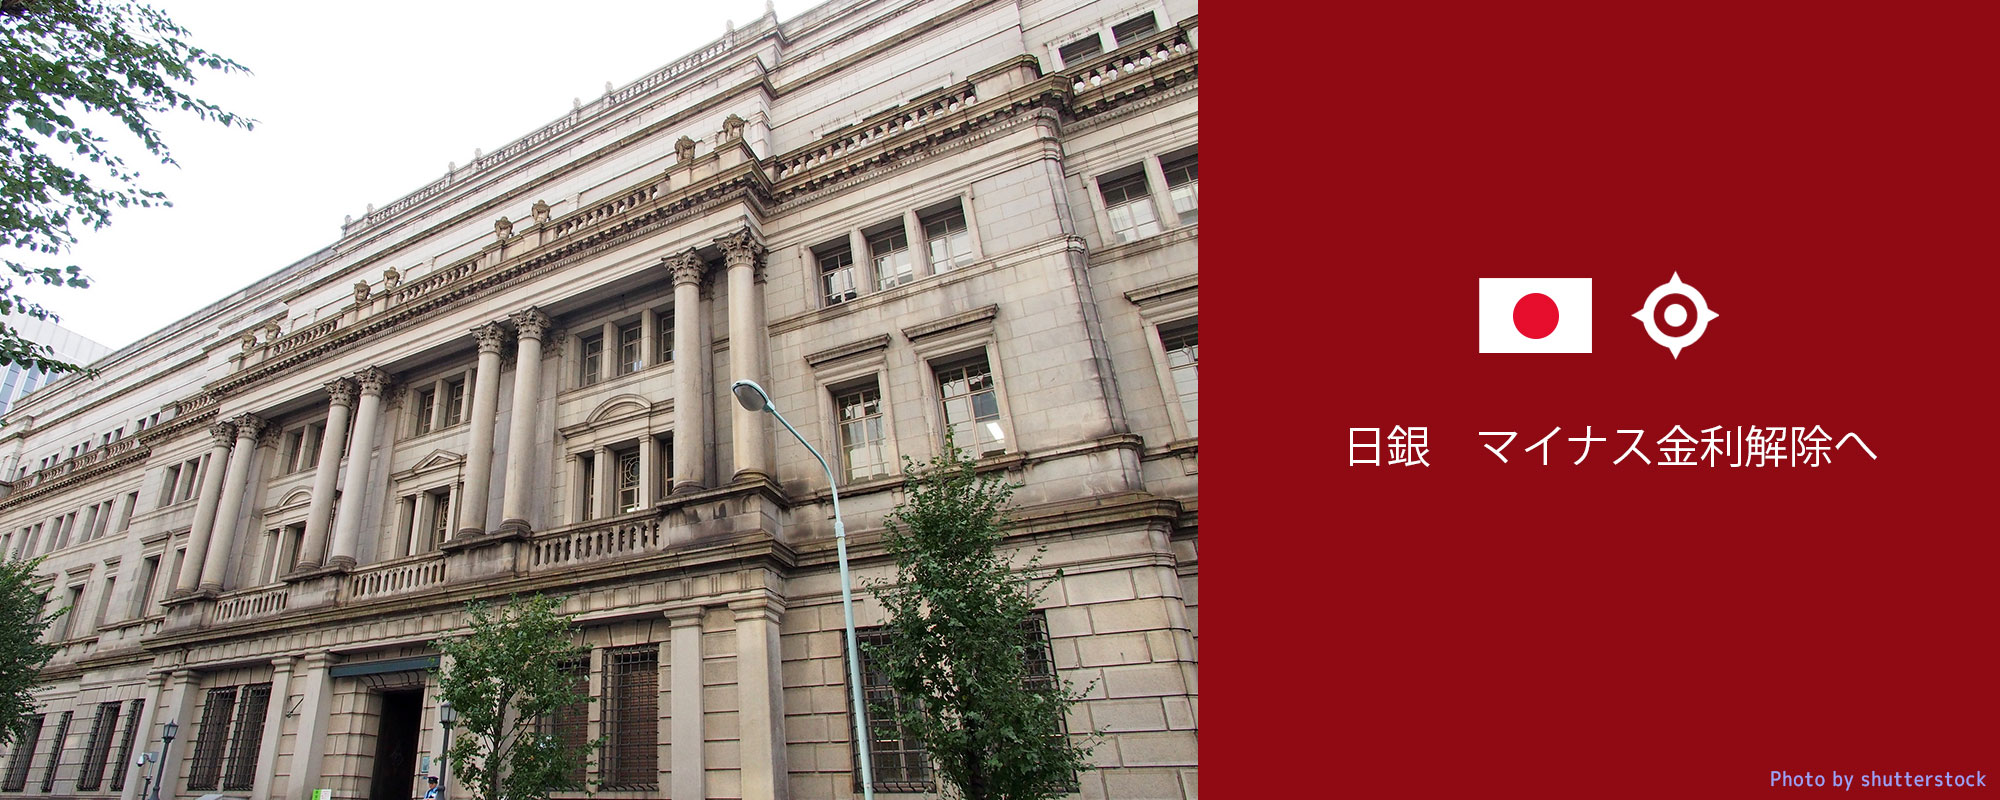 日本銀行マイナス金利解除へ